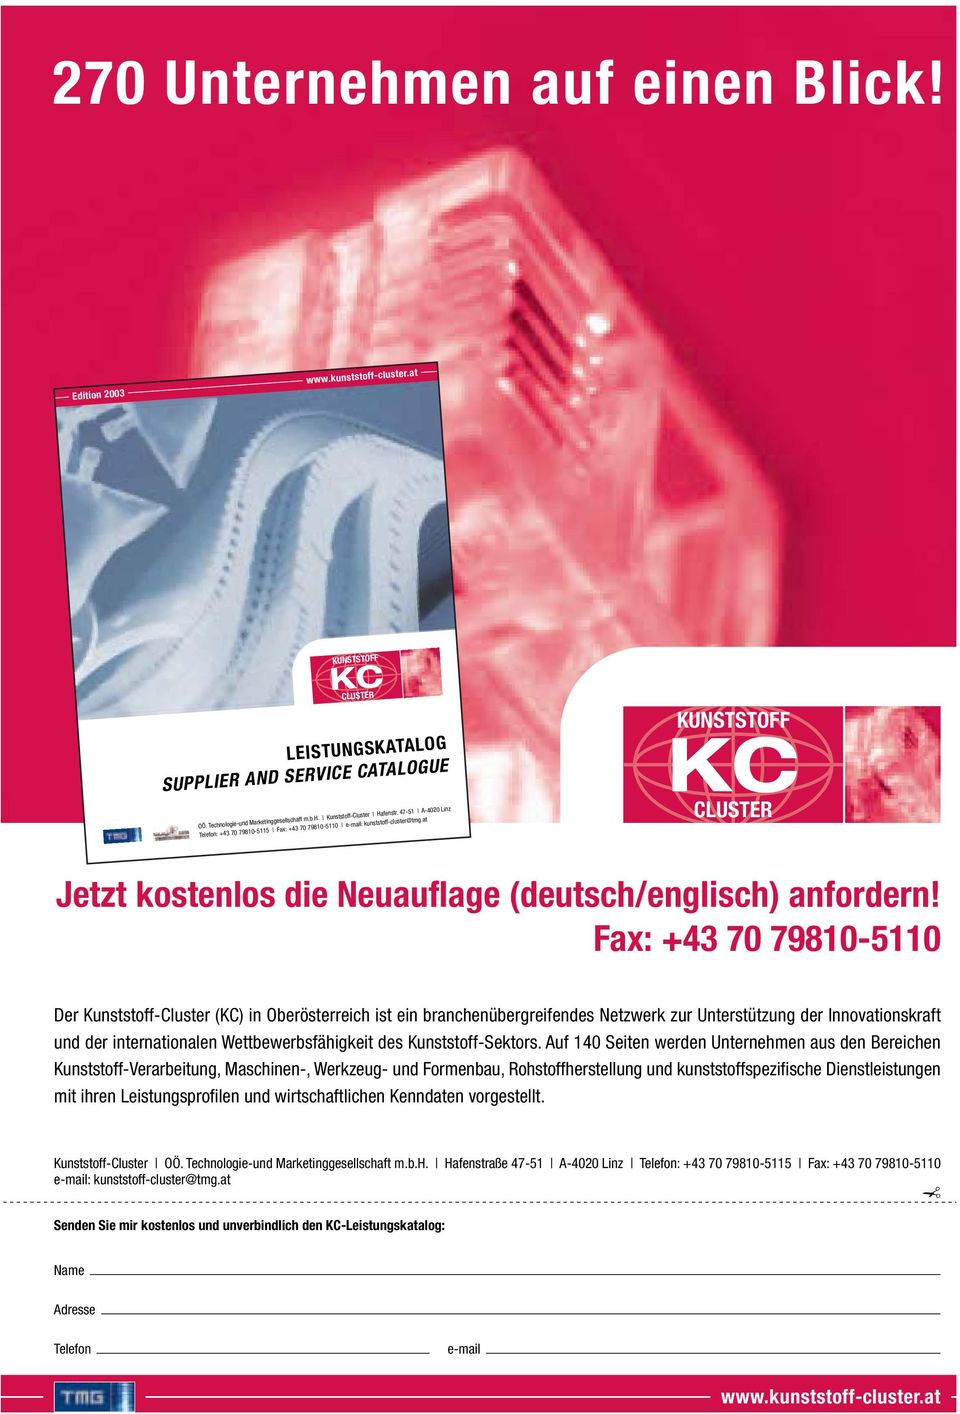 Fax: +43 70 79810-5110 Der Kunststoff-Cluster (KC) in Oberösterreich ist ein branchenübergreifendes Netzwerk zur Unterstützung der Innovationskraft und der internationalen Wettbewerbsfähigkeit des